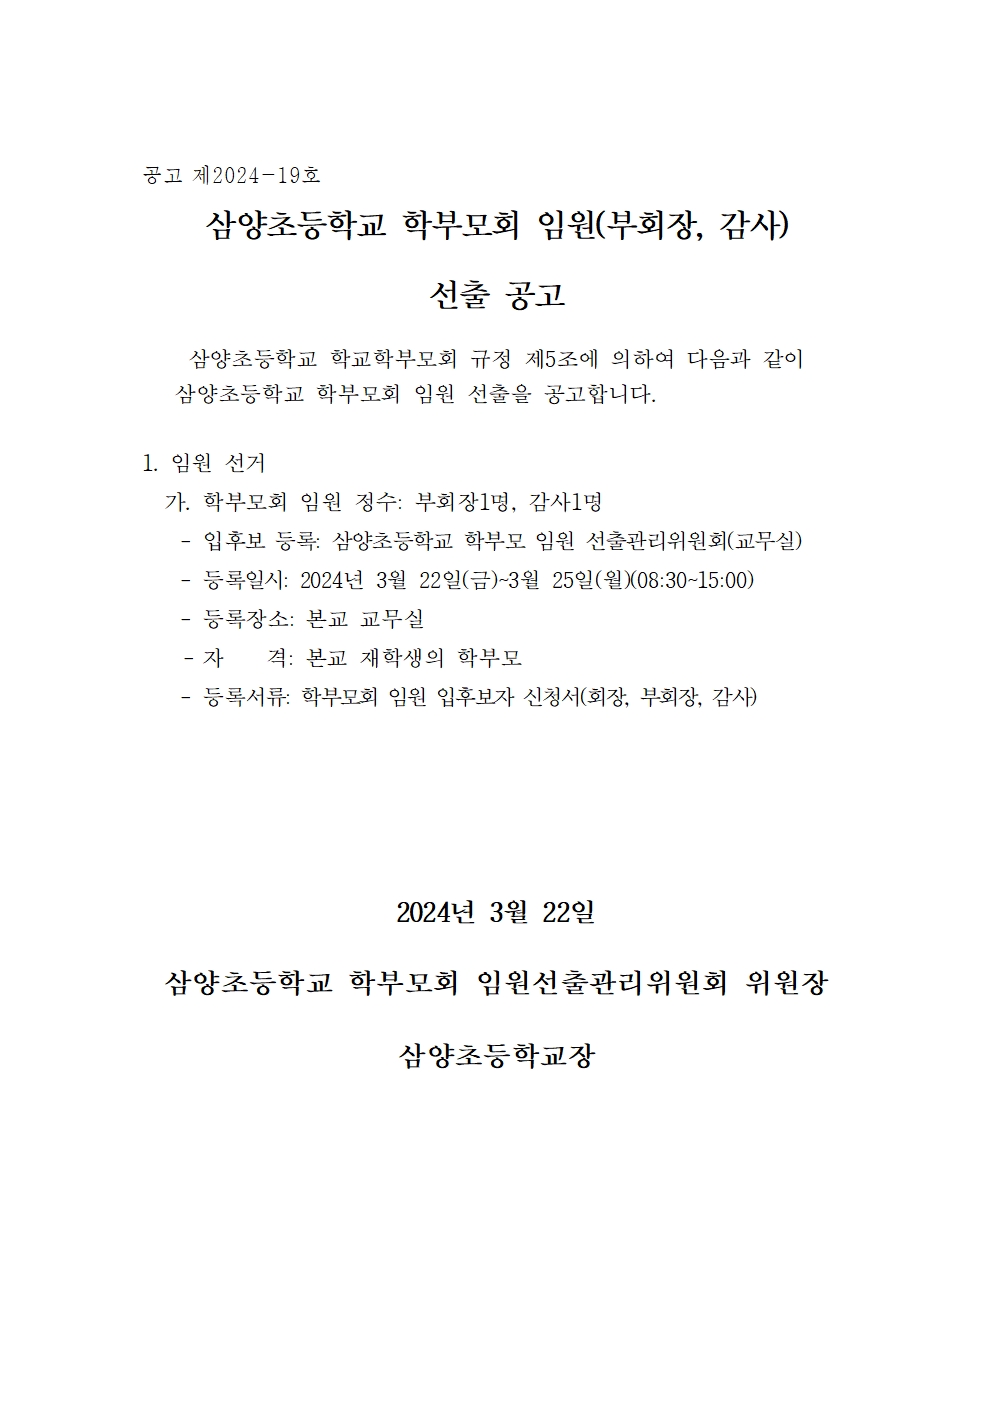 2-1 삼양초등학교 학부모회 임원 선출 공고(부회장, 감사)001